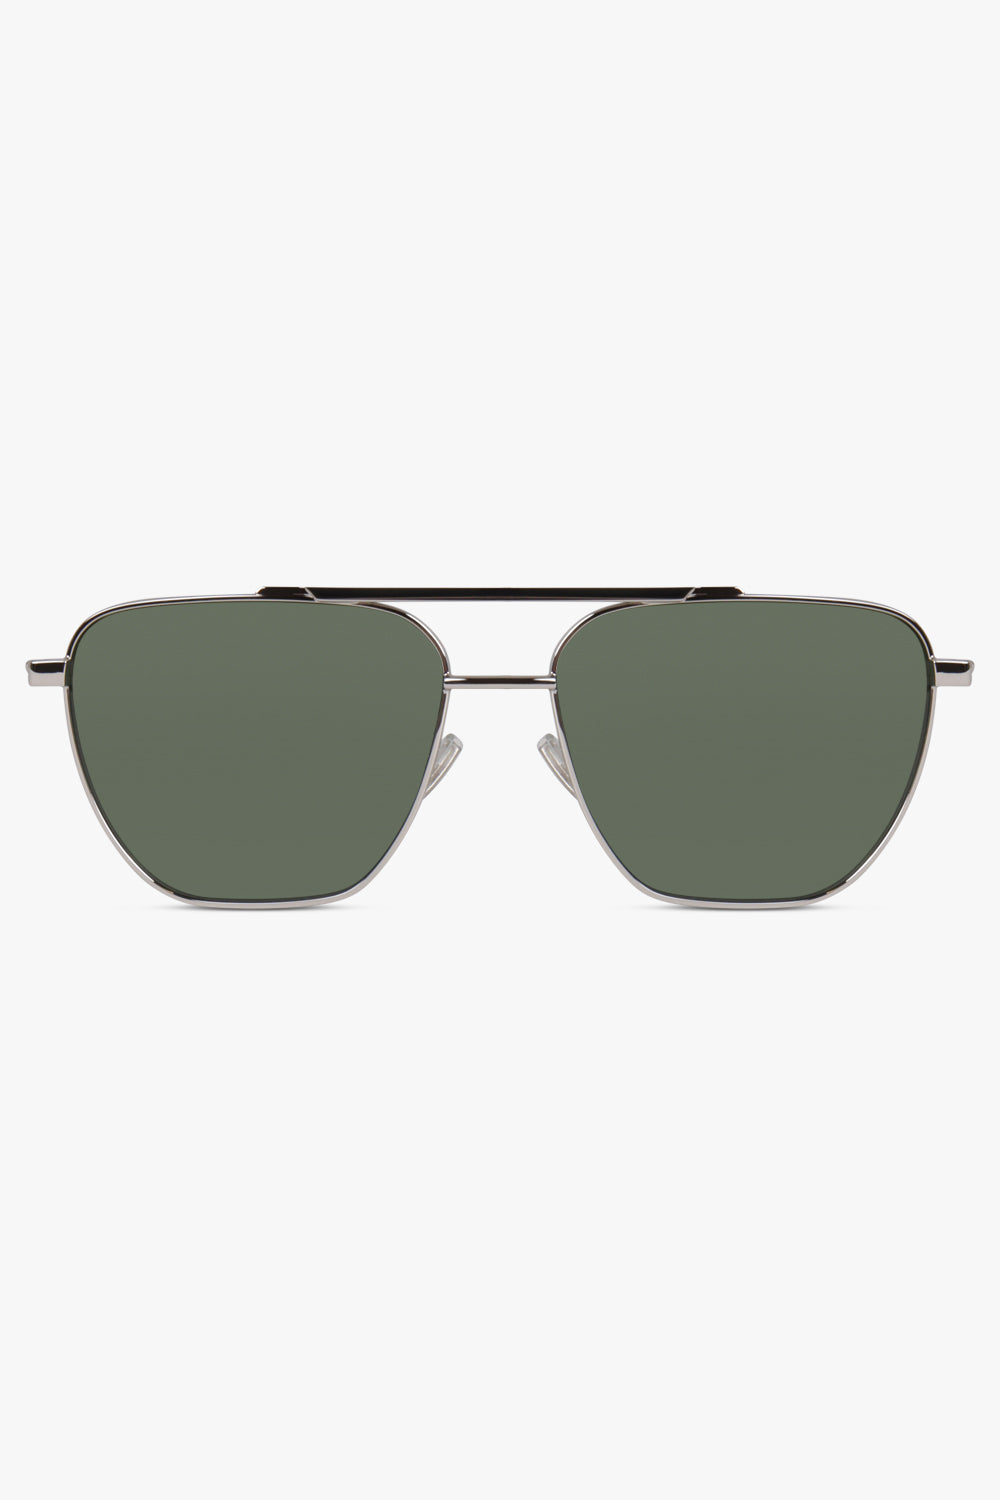 BOTTEGA VENETA ACCESSORIES SILVER / SILVER/GREEN Turn Square Sunglasses | Silver/Green